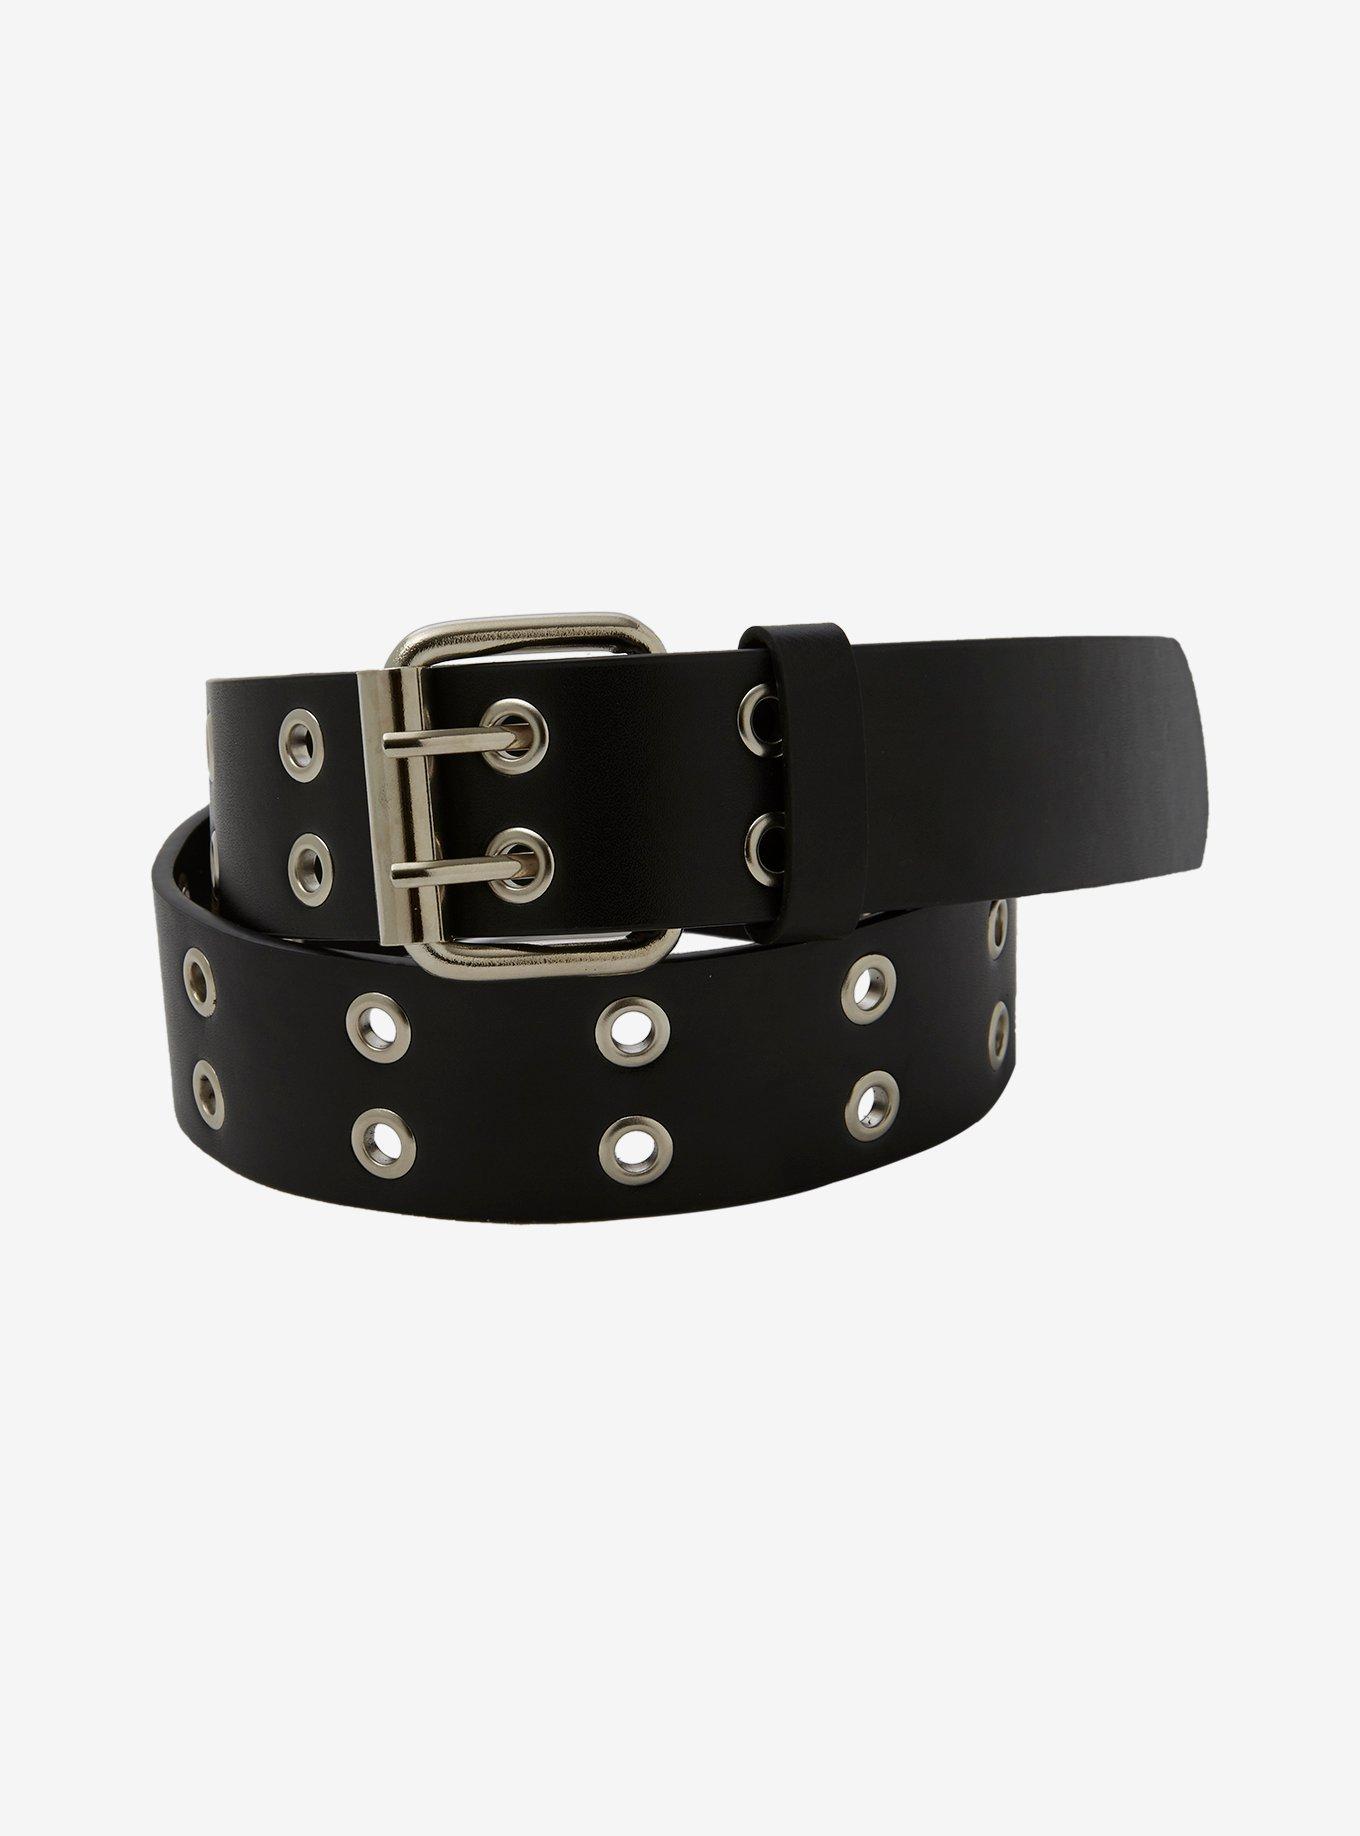 Black Leather Grommet Belt | Topic Hot Faux